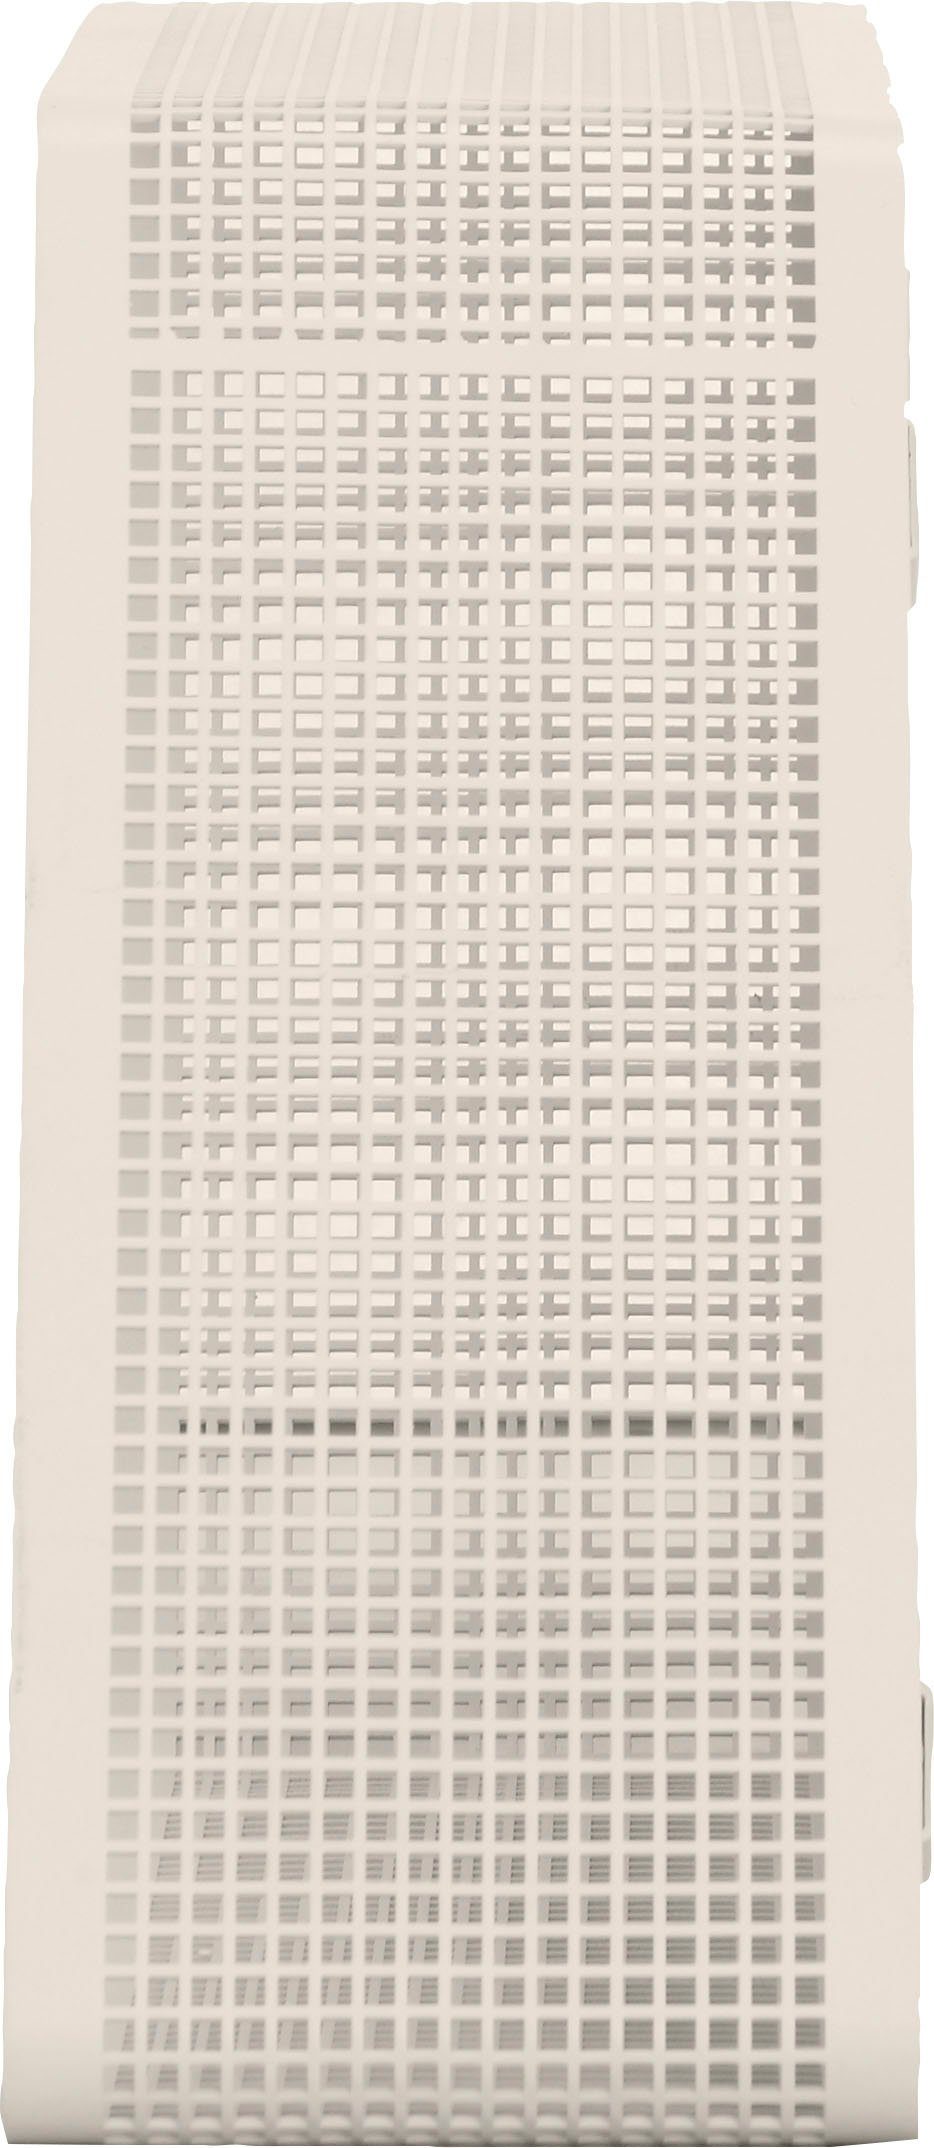 andas Regal Crossby, mit Netzmuster, Breite ca. 56,8 cm, Design by Morten Georgsen